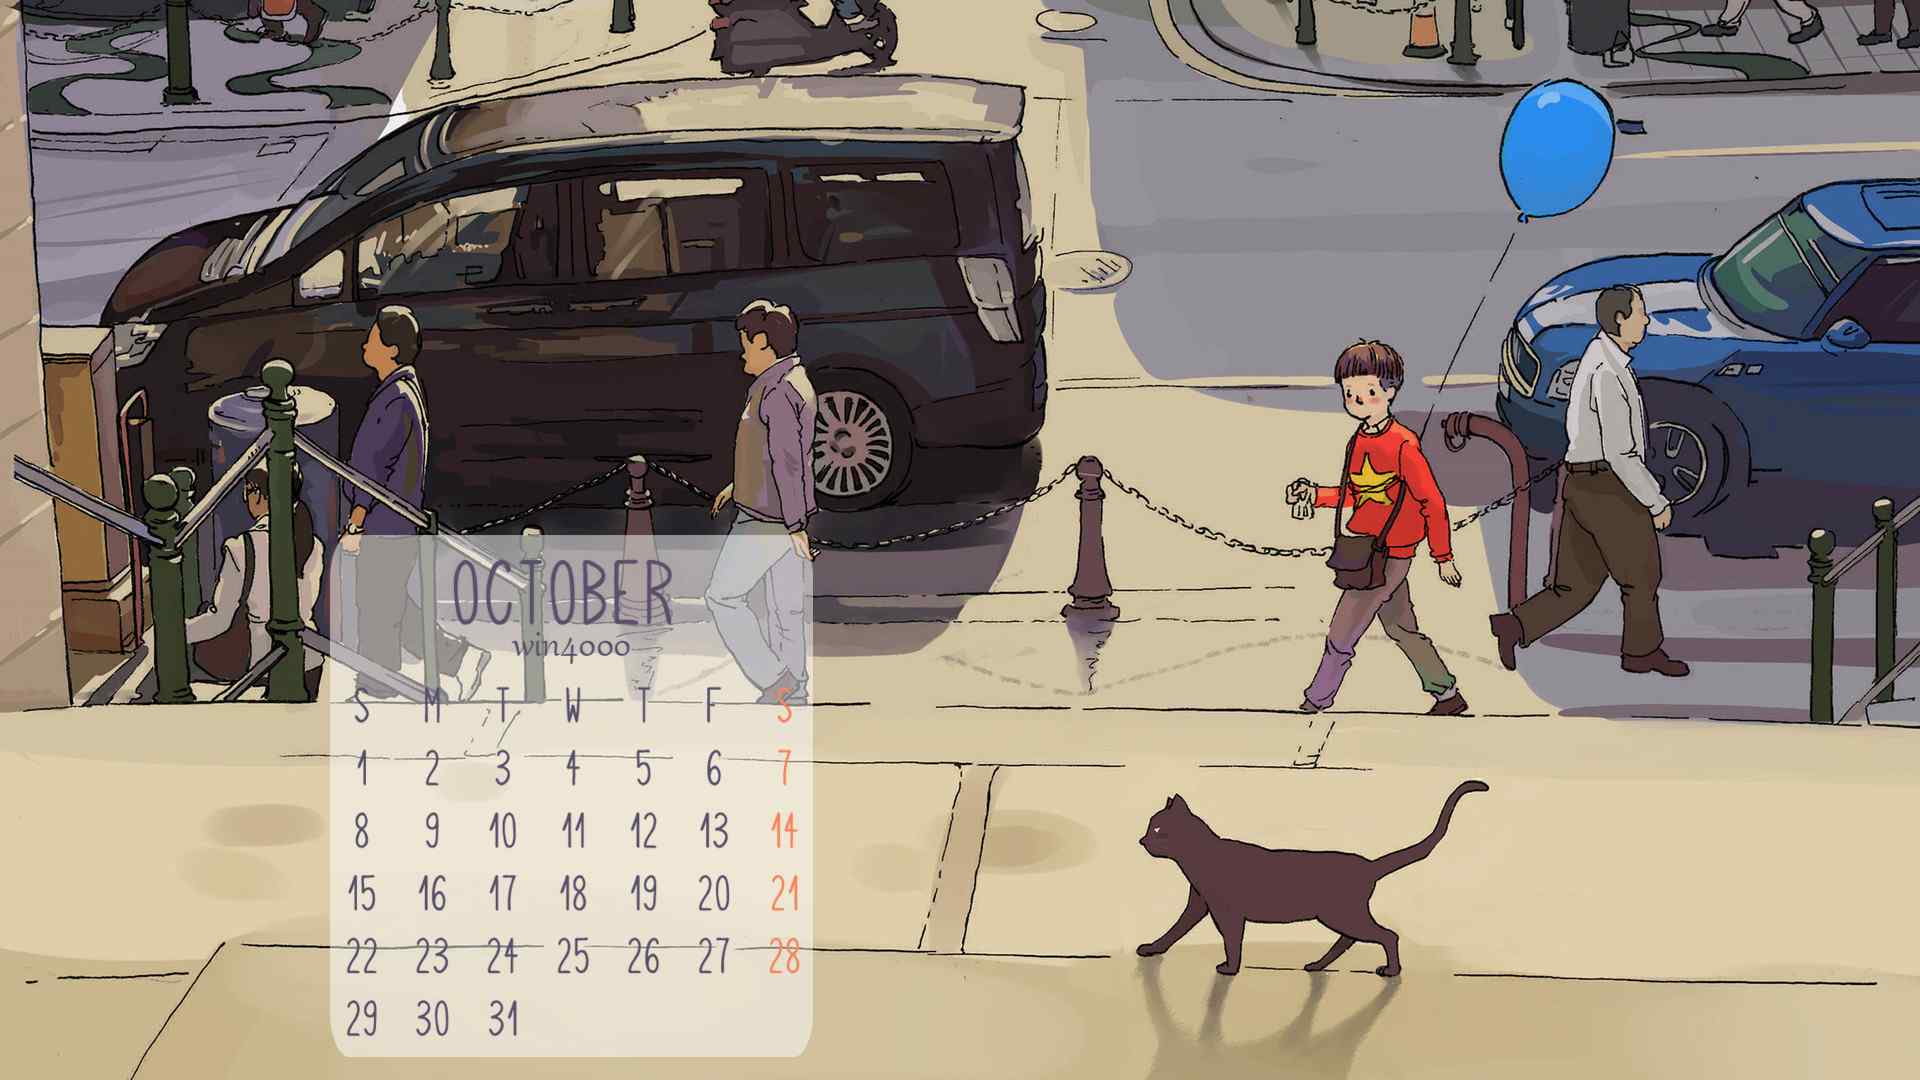 2016年10月日历清新可爱手绘水彩插画电脑桌面壁纸